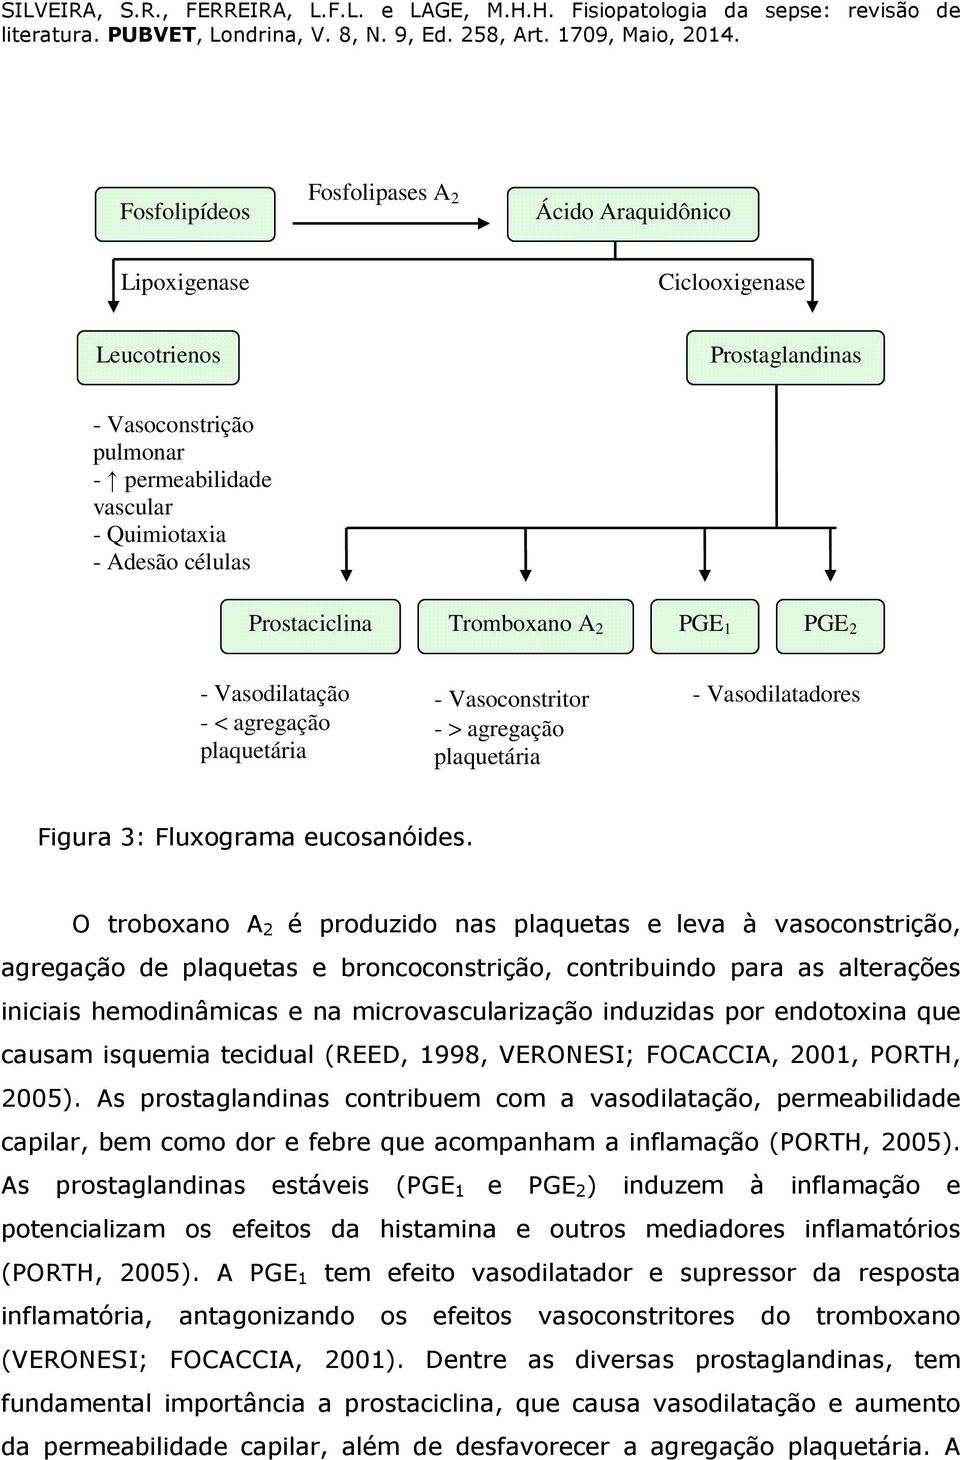 O troboxano A 2 é produzido nas plaquetas e leva à vasoconstrição, agregação de plaquetas e broncoconstrição, contribuindo para as alterações iniciais hemodinâmicas e na microvascularização induzidas